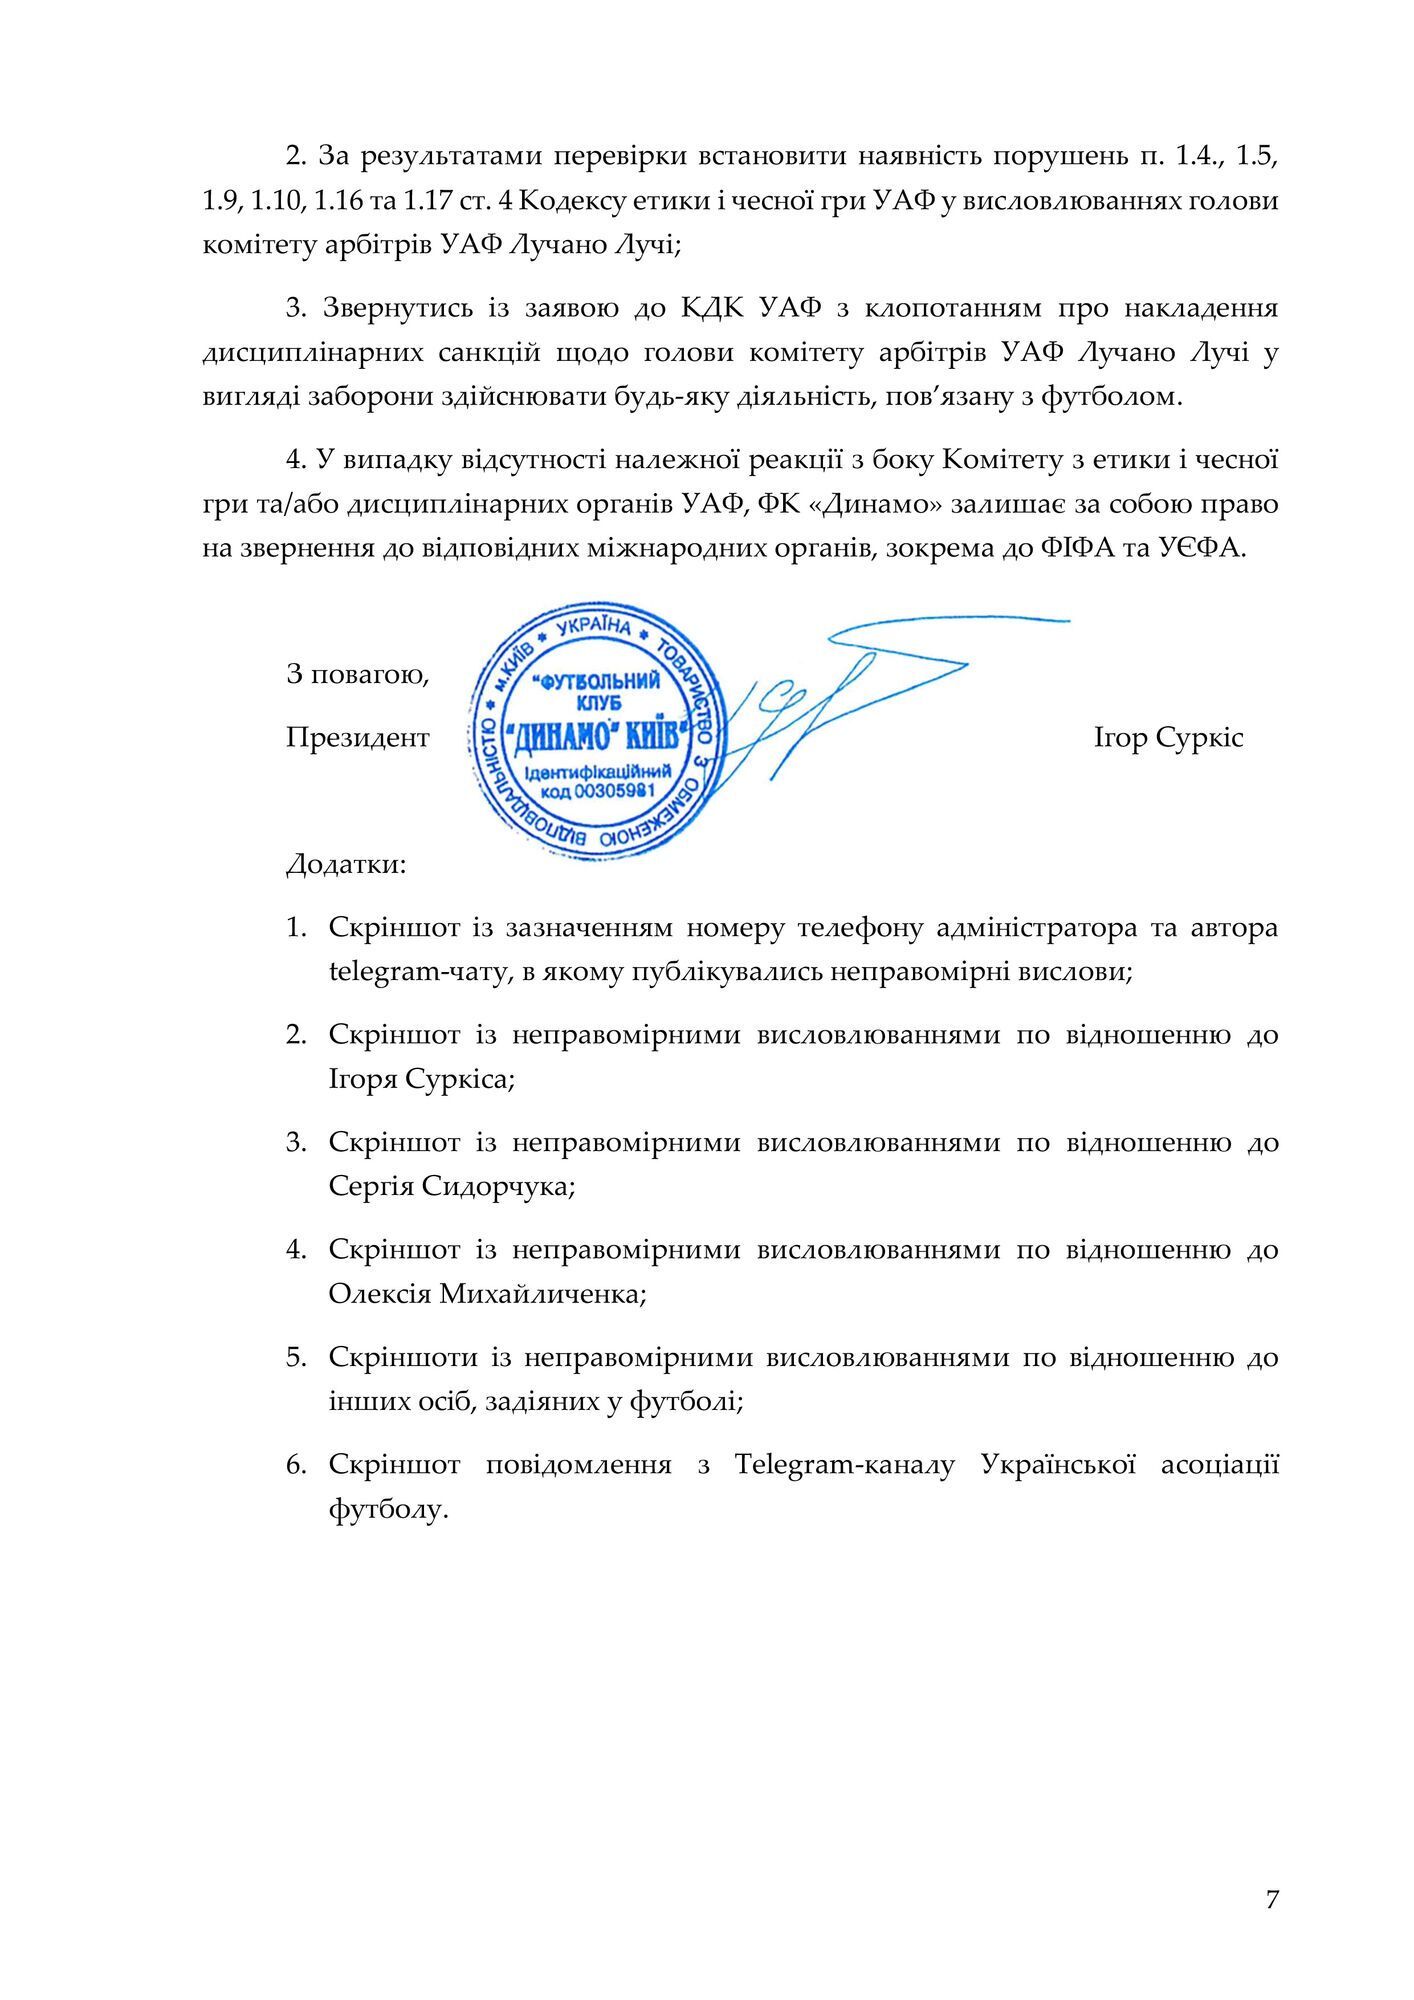 Официальное заявление "Динамо", страница 7